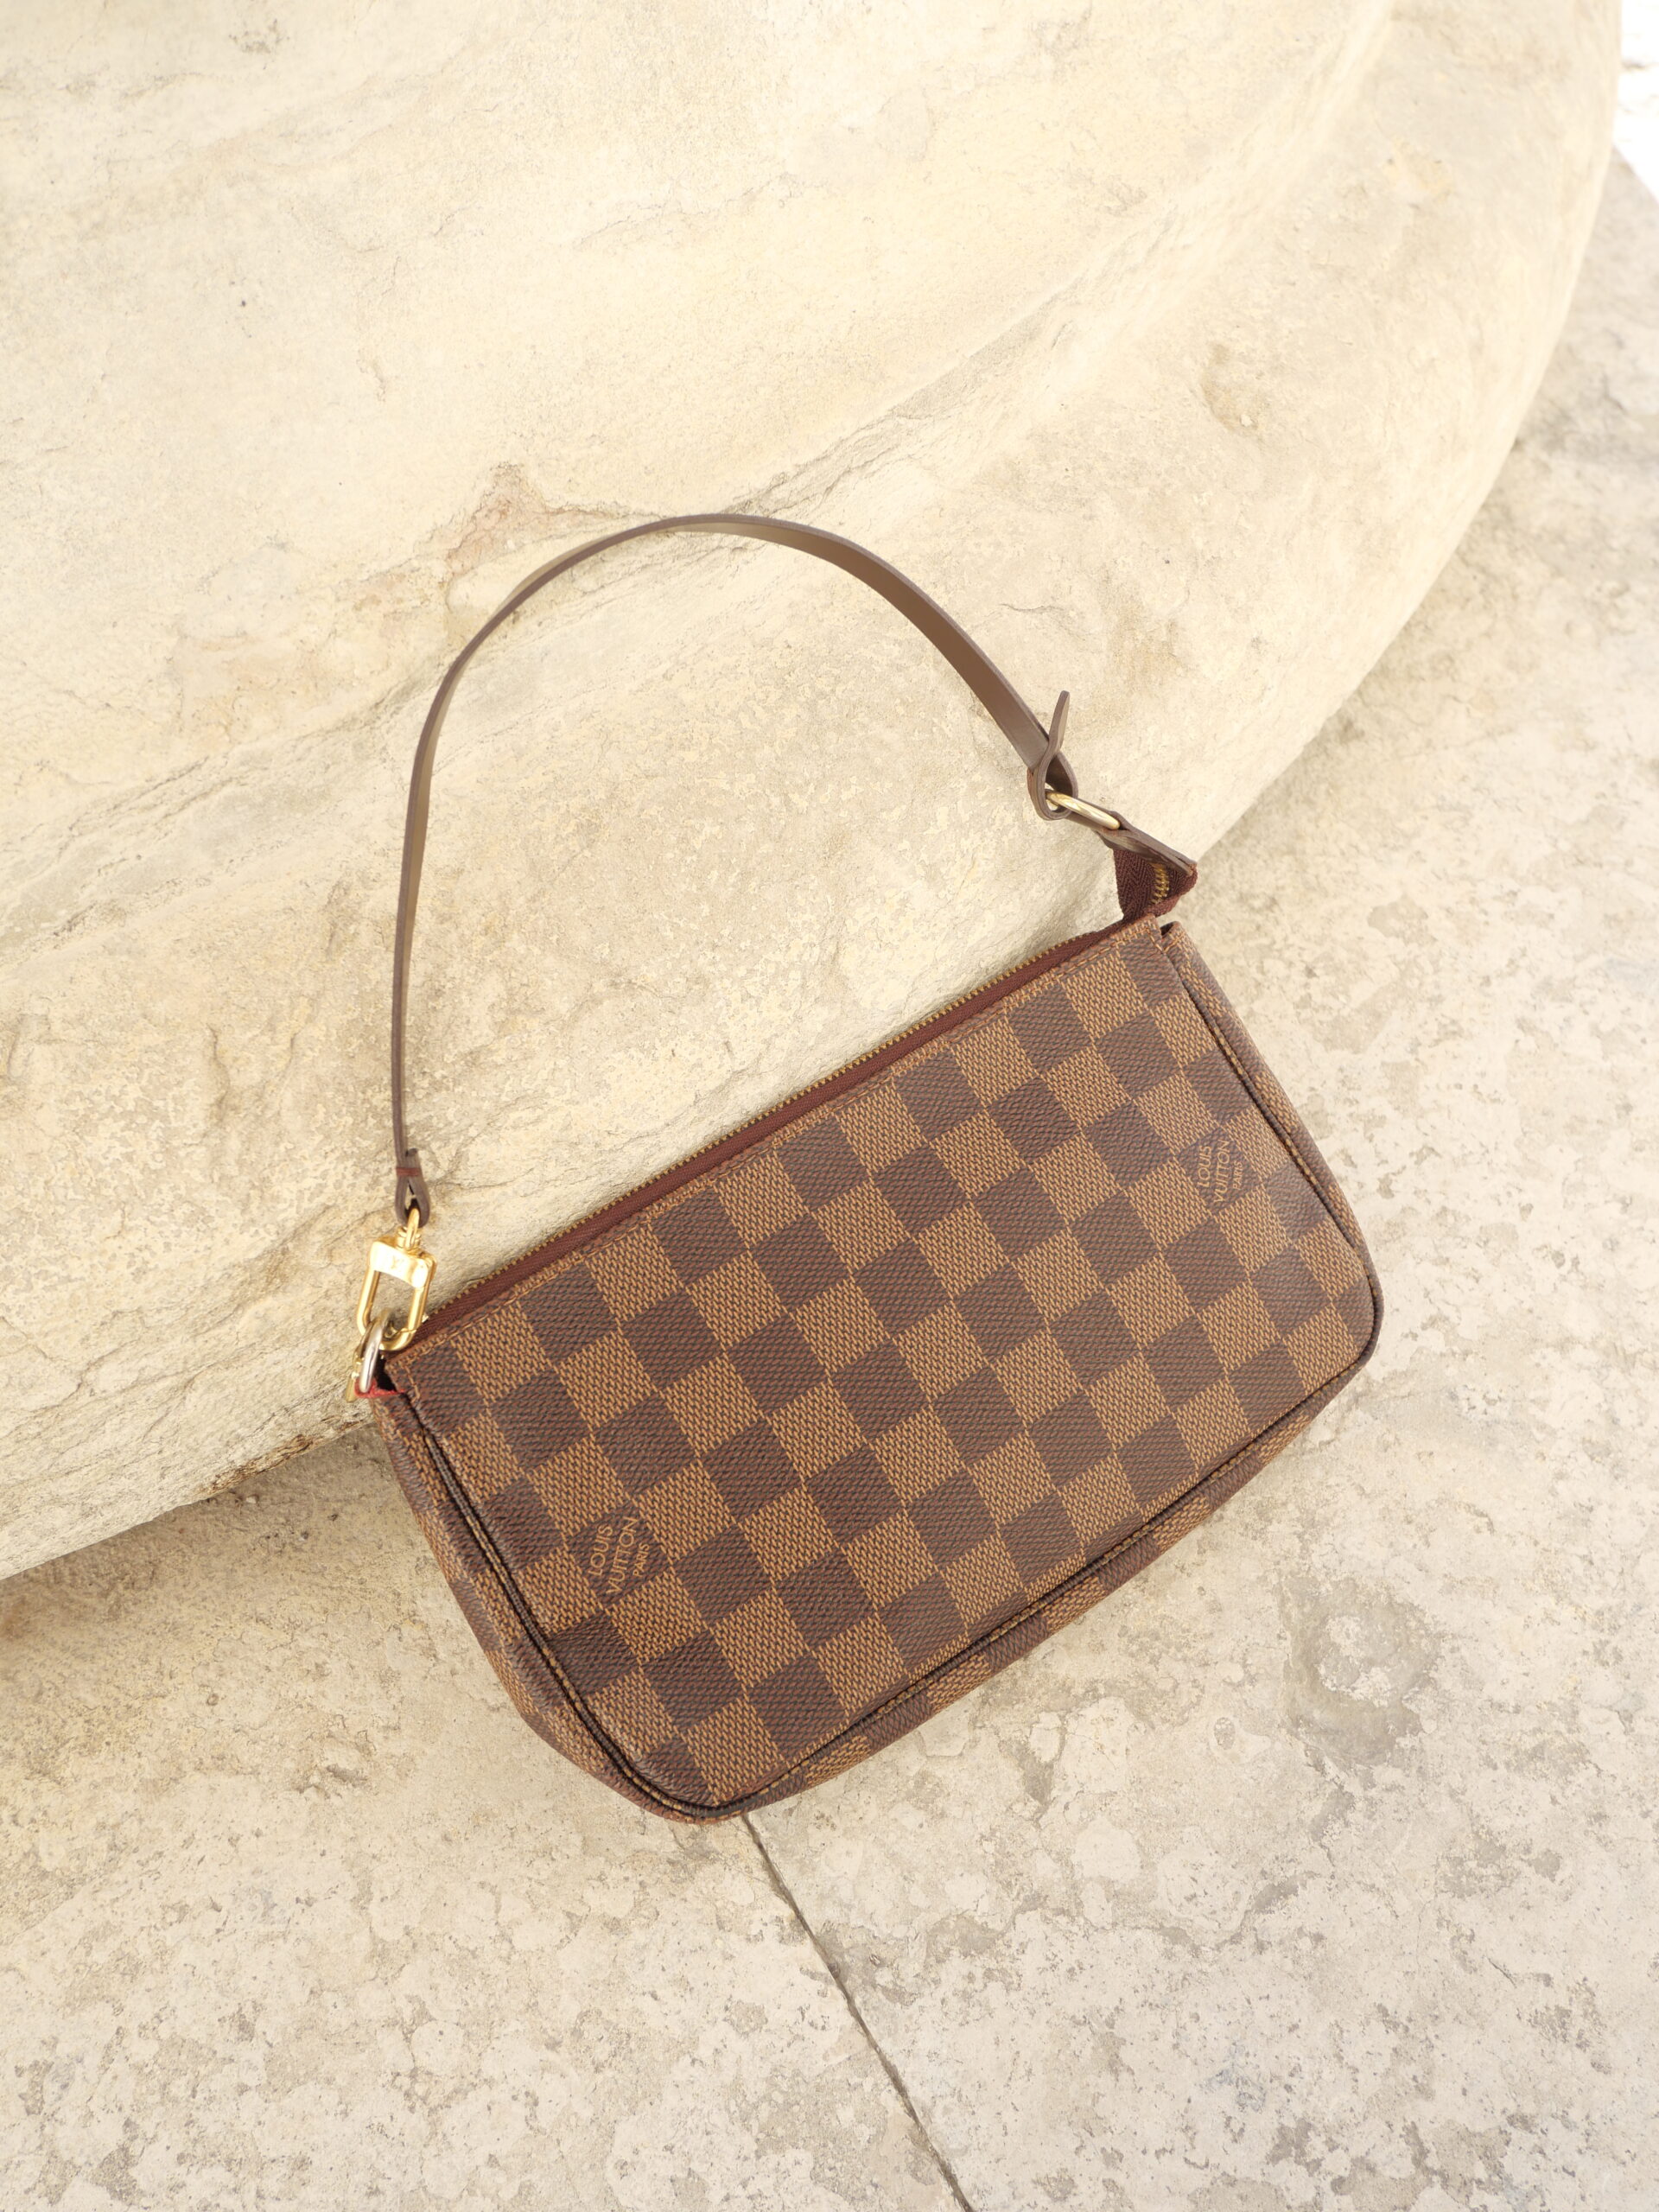 Louis Vuitton LV Circle Taschenanhänger - Ankauf & Verkauf Second Hand  Designertaschen und Accessoires